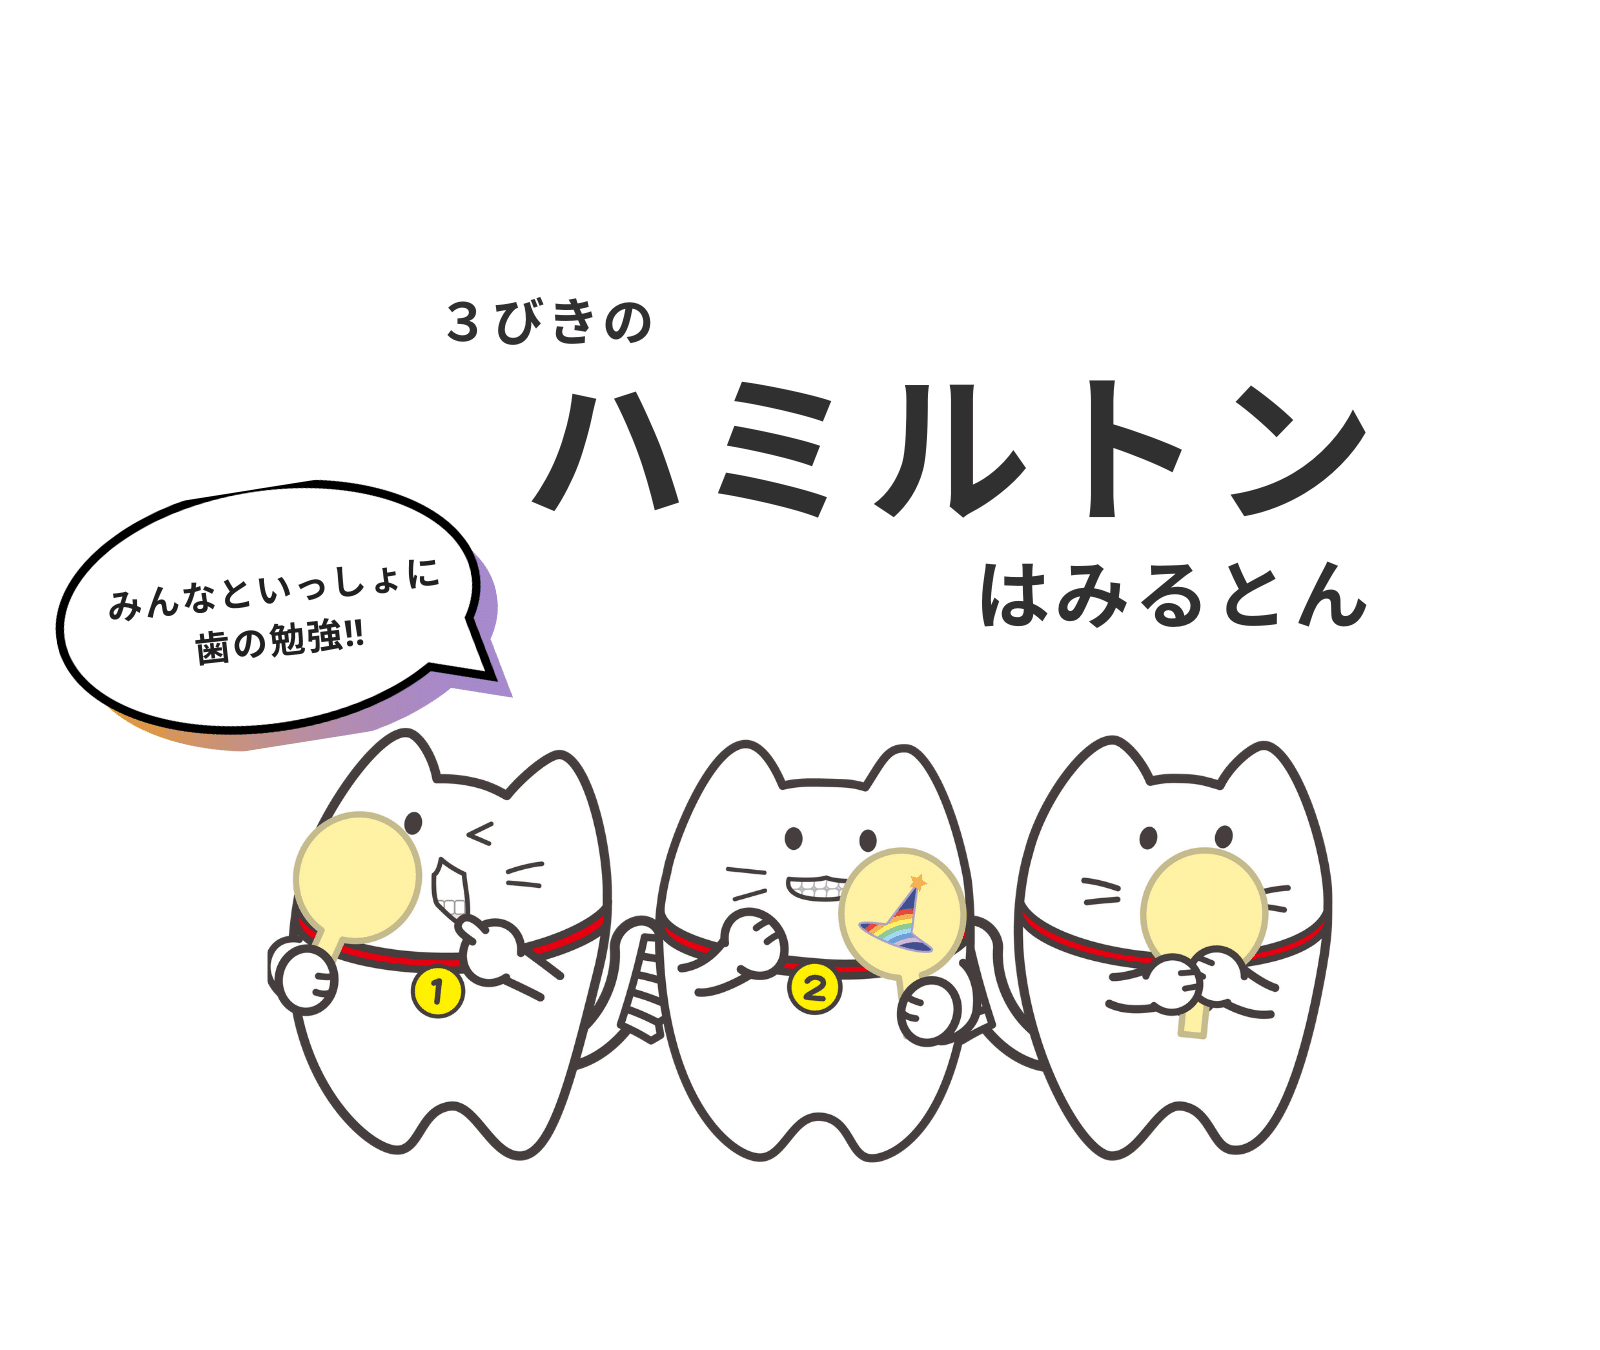 ハミルトン_マスコットキャラクター_ABC Dental